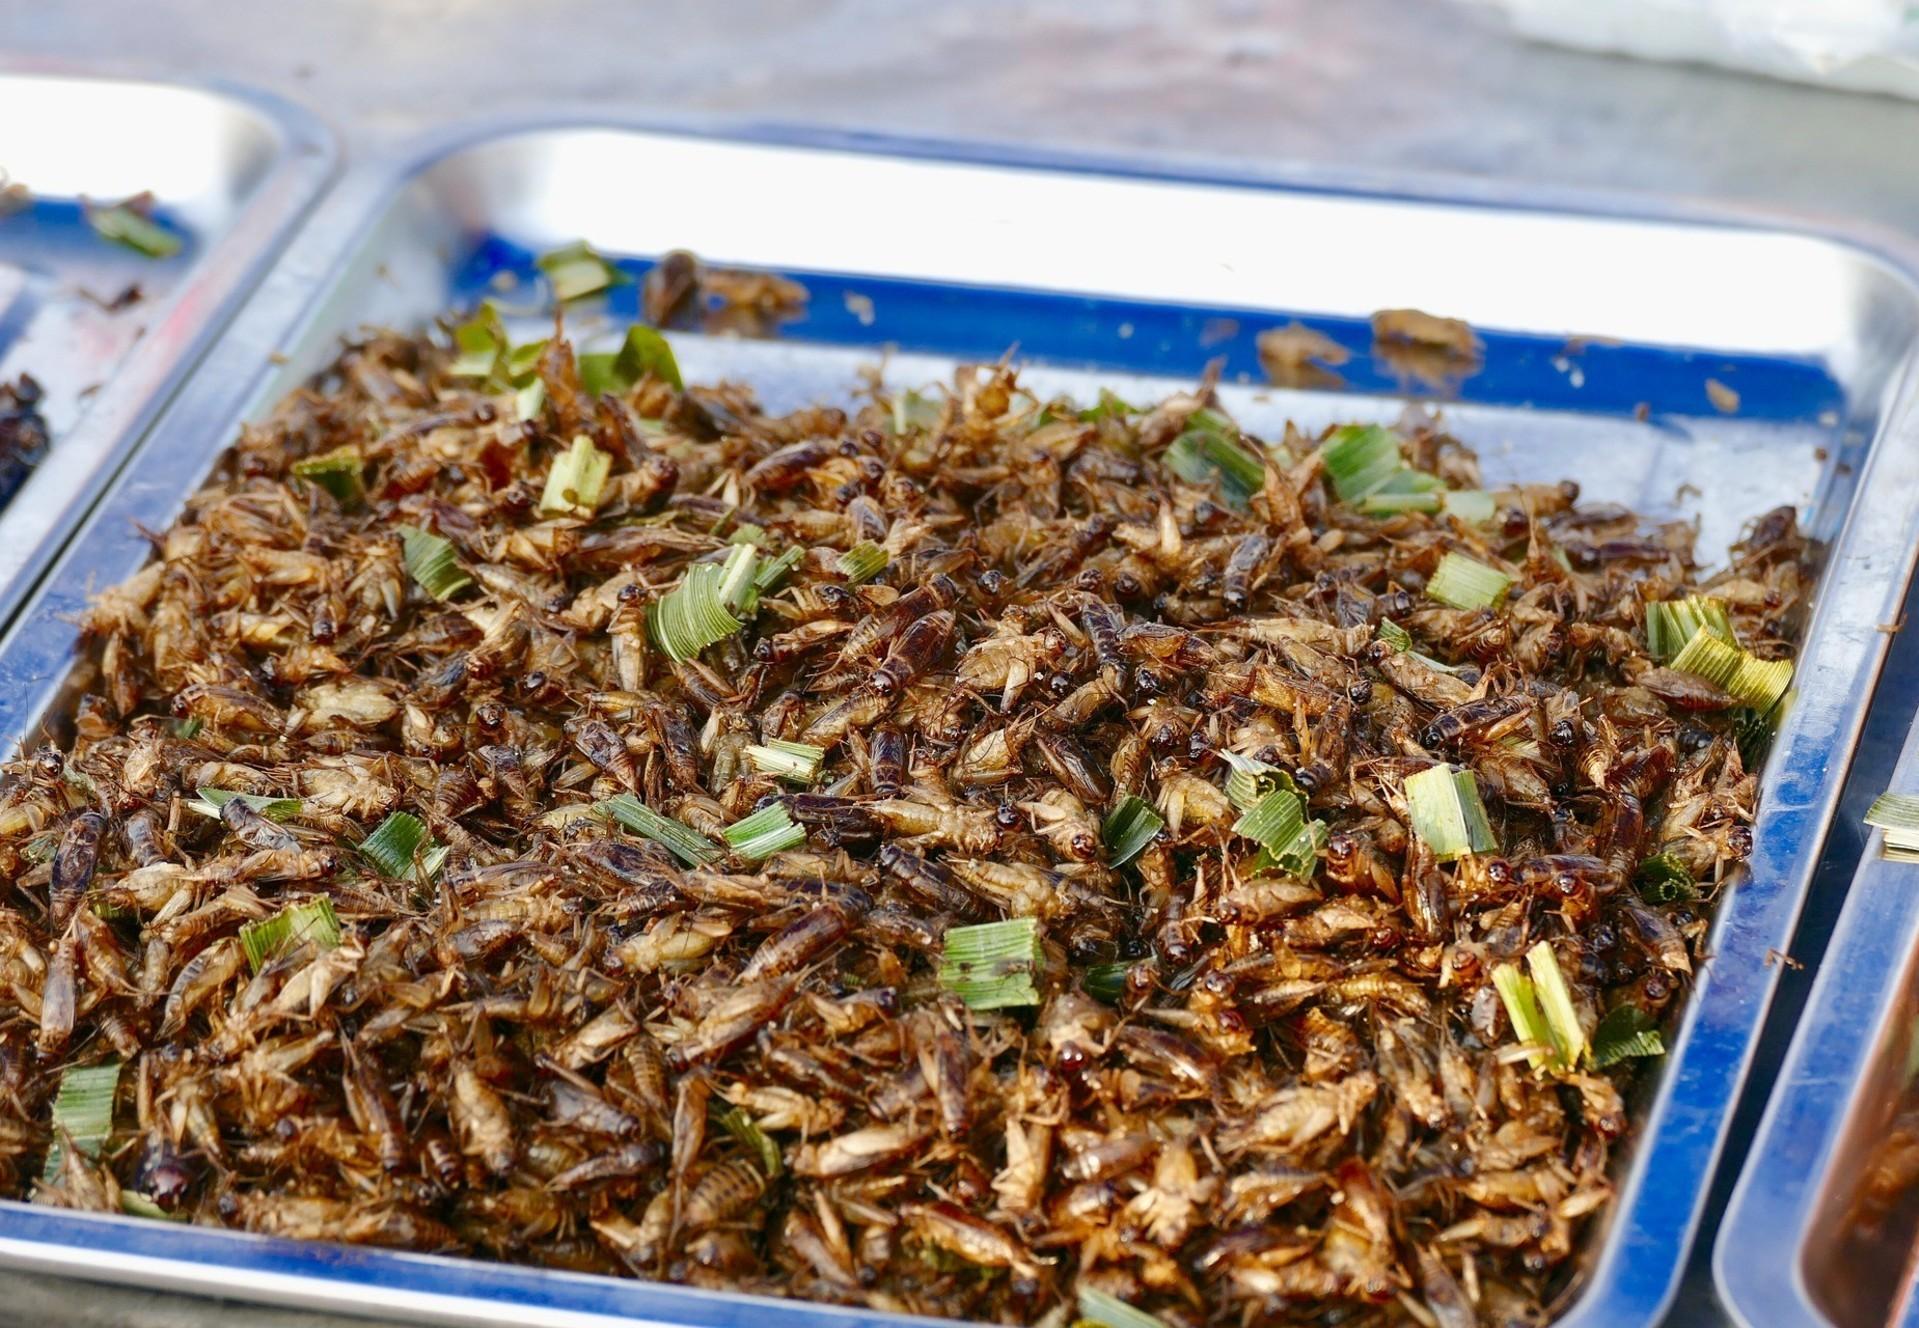 Insectes comestibles : quelles opportunités de marché en Europe et